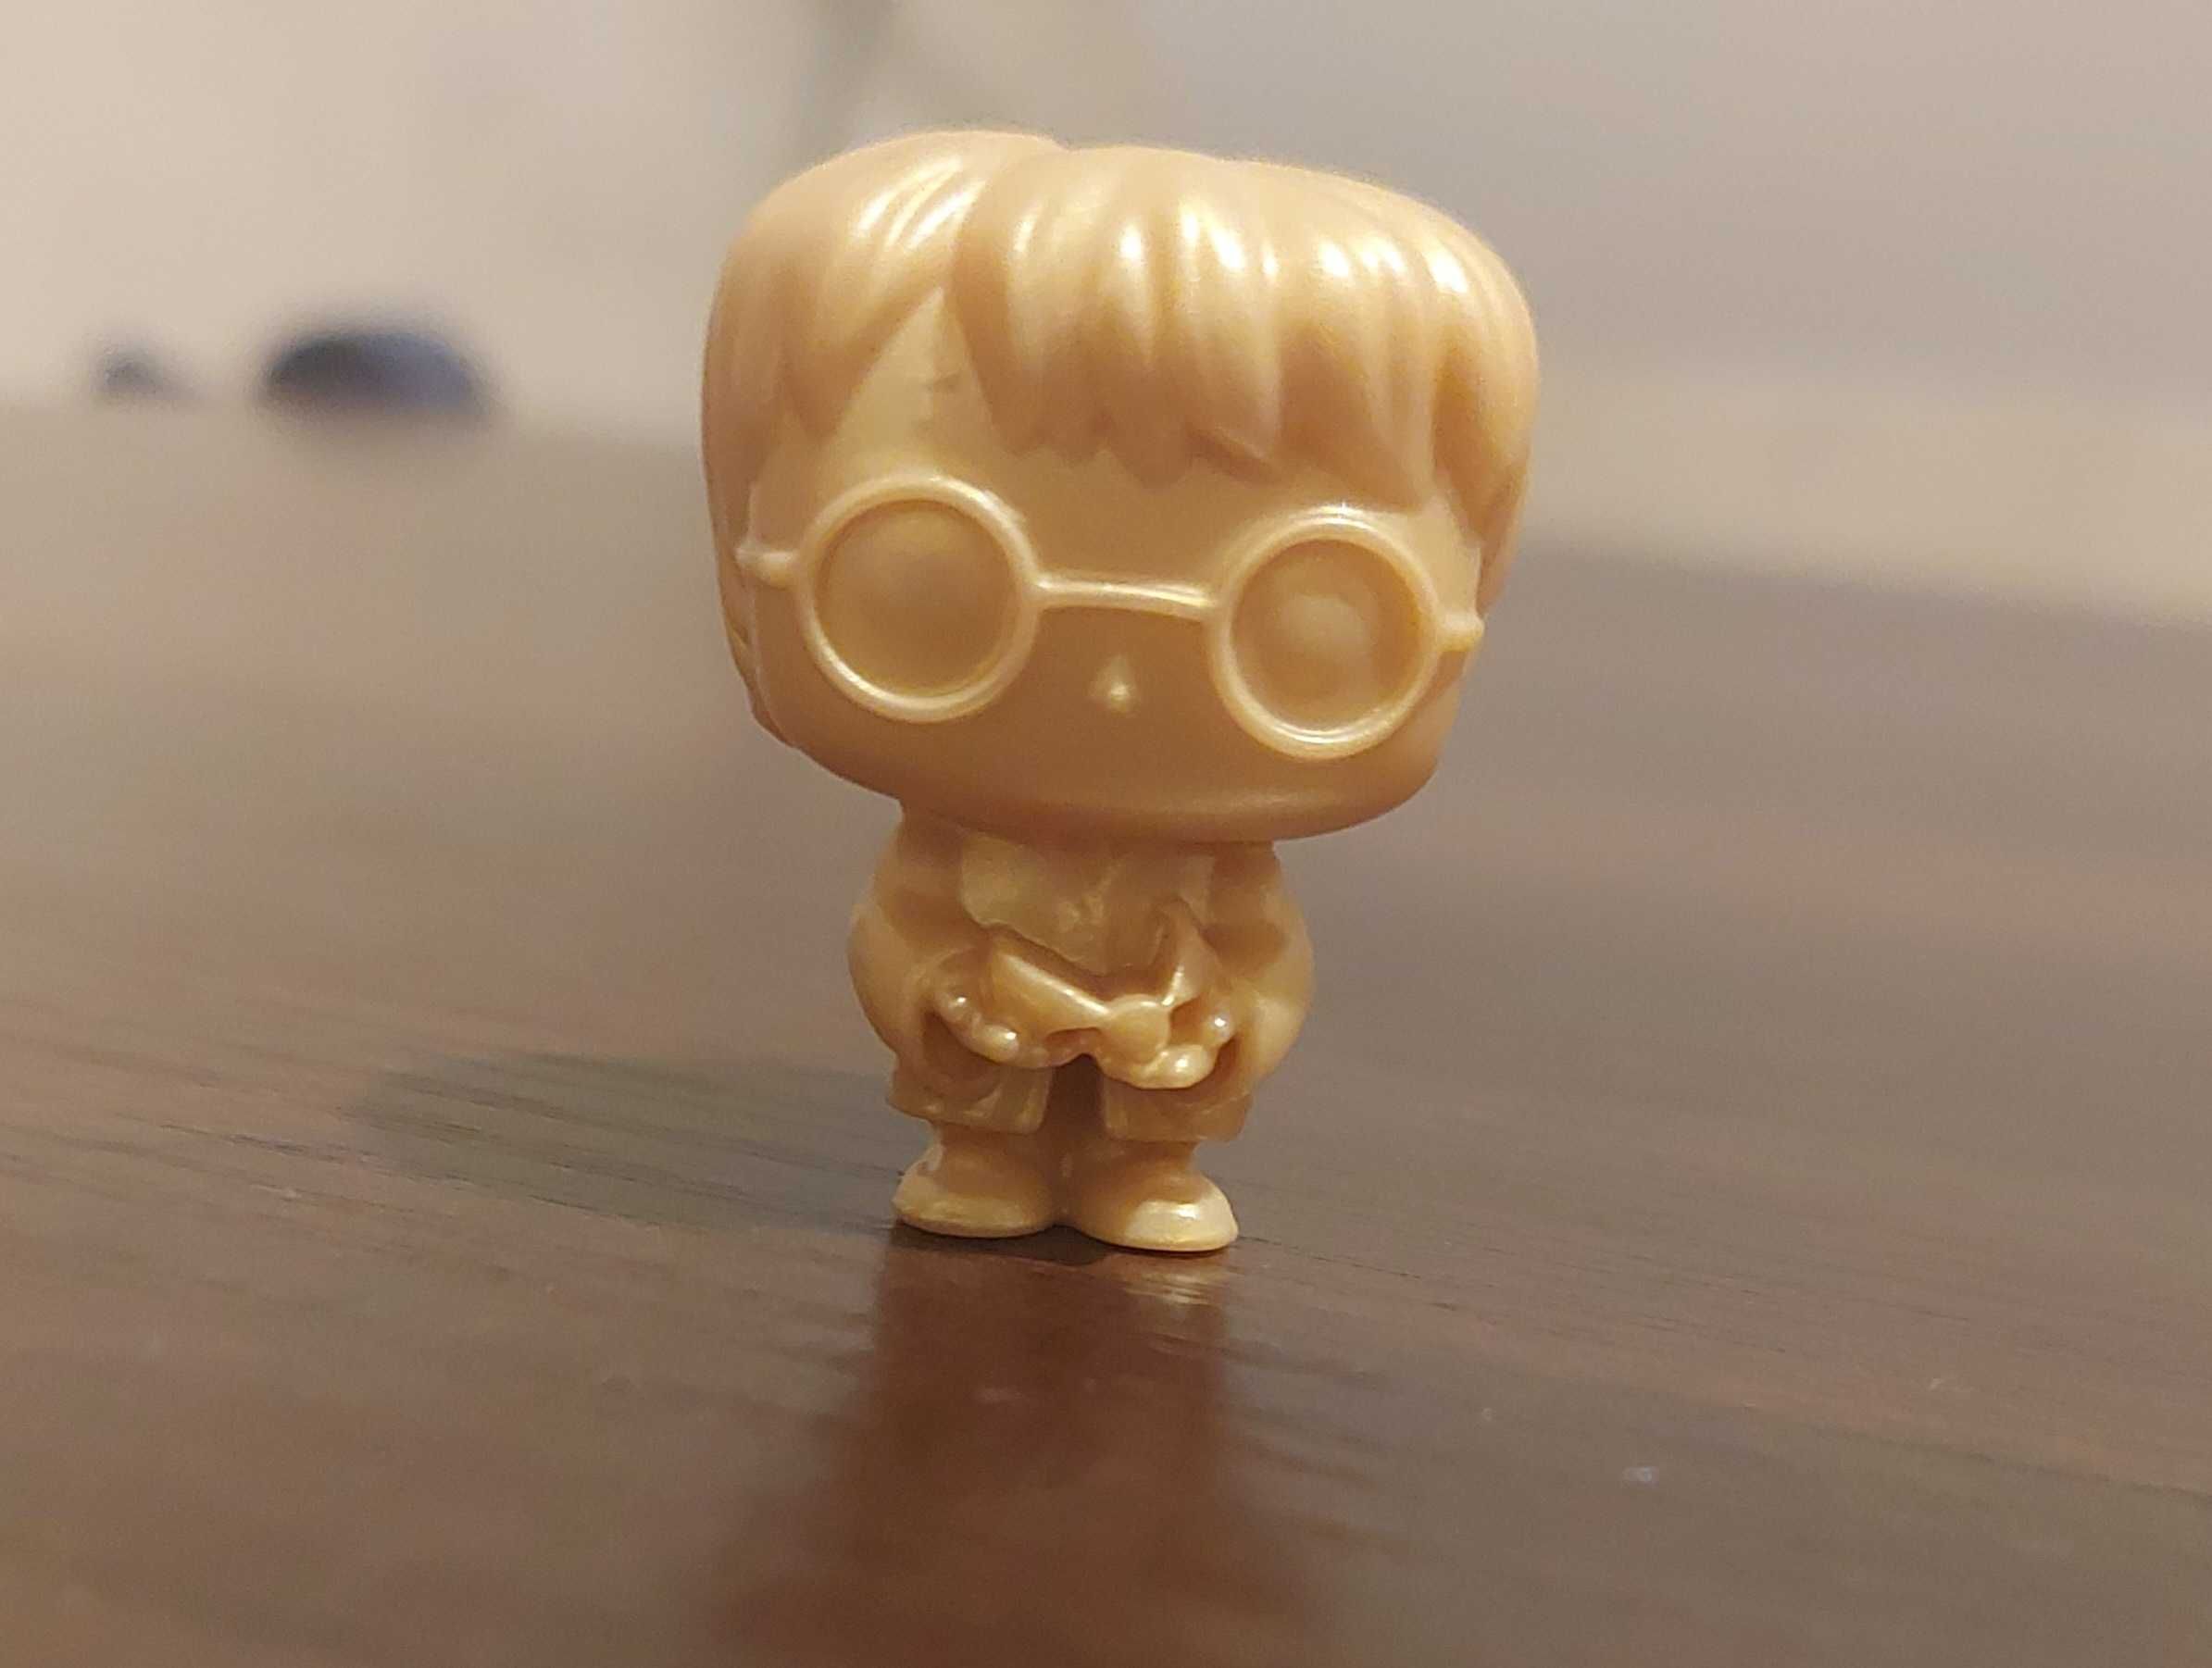 Złota figurka Harry Potter Funko Pop Quidditch możliwa wymiana